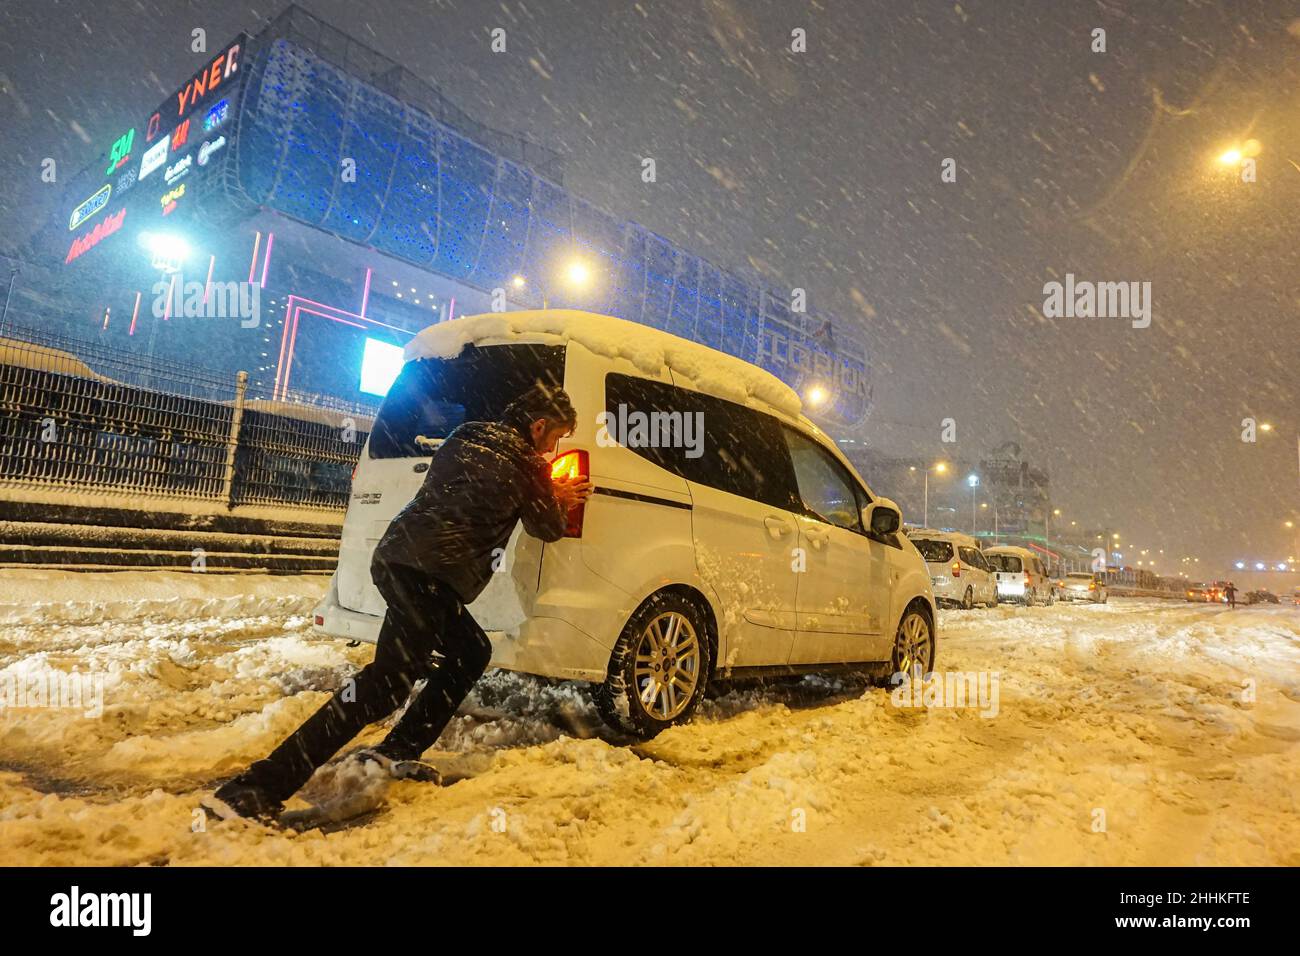 Ein Mann sah ein Auto auf einer schneebedeckten Straße schieben. Der Schneesturm, der in Istanbul am Abend ausbrach, brachte trotz der ergriffenen Maßnahmen das Leben zum Stillstand. Während die Metrobus-Verbindungen für kurze Zeit unterbrochen wurden, war die Autobahn D-100 am Standort Haramidere wegen des starken Schneefalls für den Verkehr gesperrt. Viele Fahrzeuge blieben stundenlang auf der Straße. Bürger mobilisierten, um die Fahrzeuge zu retten. Das Büro des Gouverneurs von Istanbul warnte die Fahrer, dass sie die Stadt nicht von Thrakien aus betreten könnten, einer Region, die sich über den europäischen Teil der Türkei bis zur westlichen Grenze zu Bulgarien und Griechenland erstreckt. (Pho Stockfoto